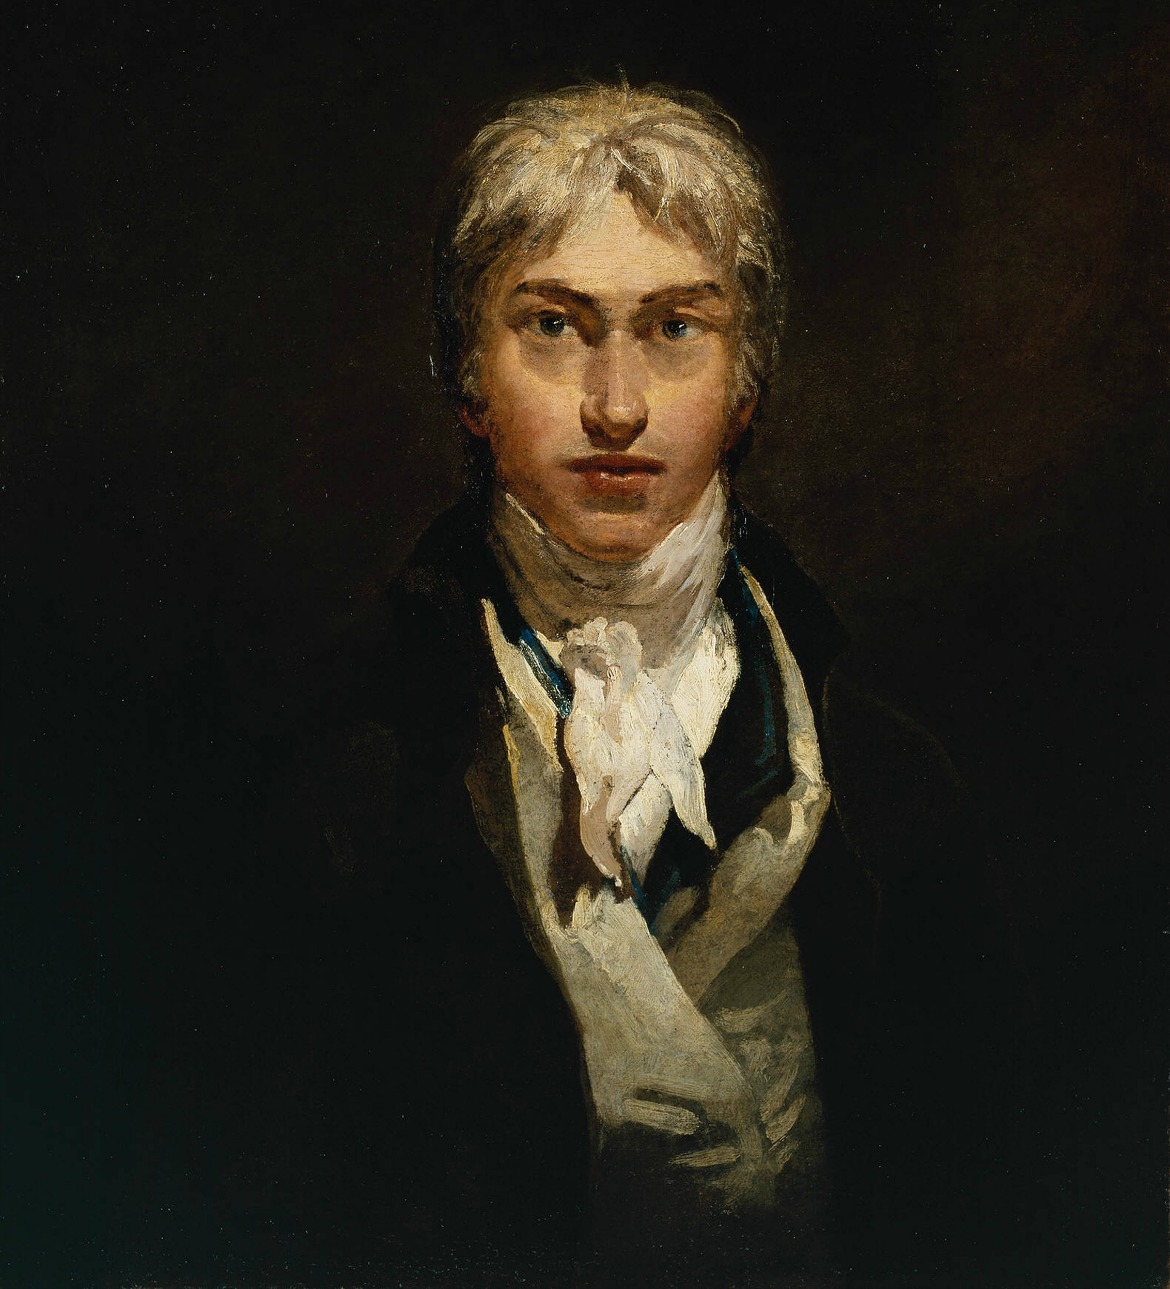 Painting of British Painter Joseph Mallord William Turner. Photo Credit: ©Tate.